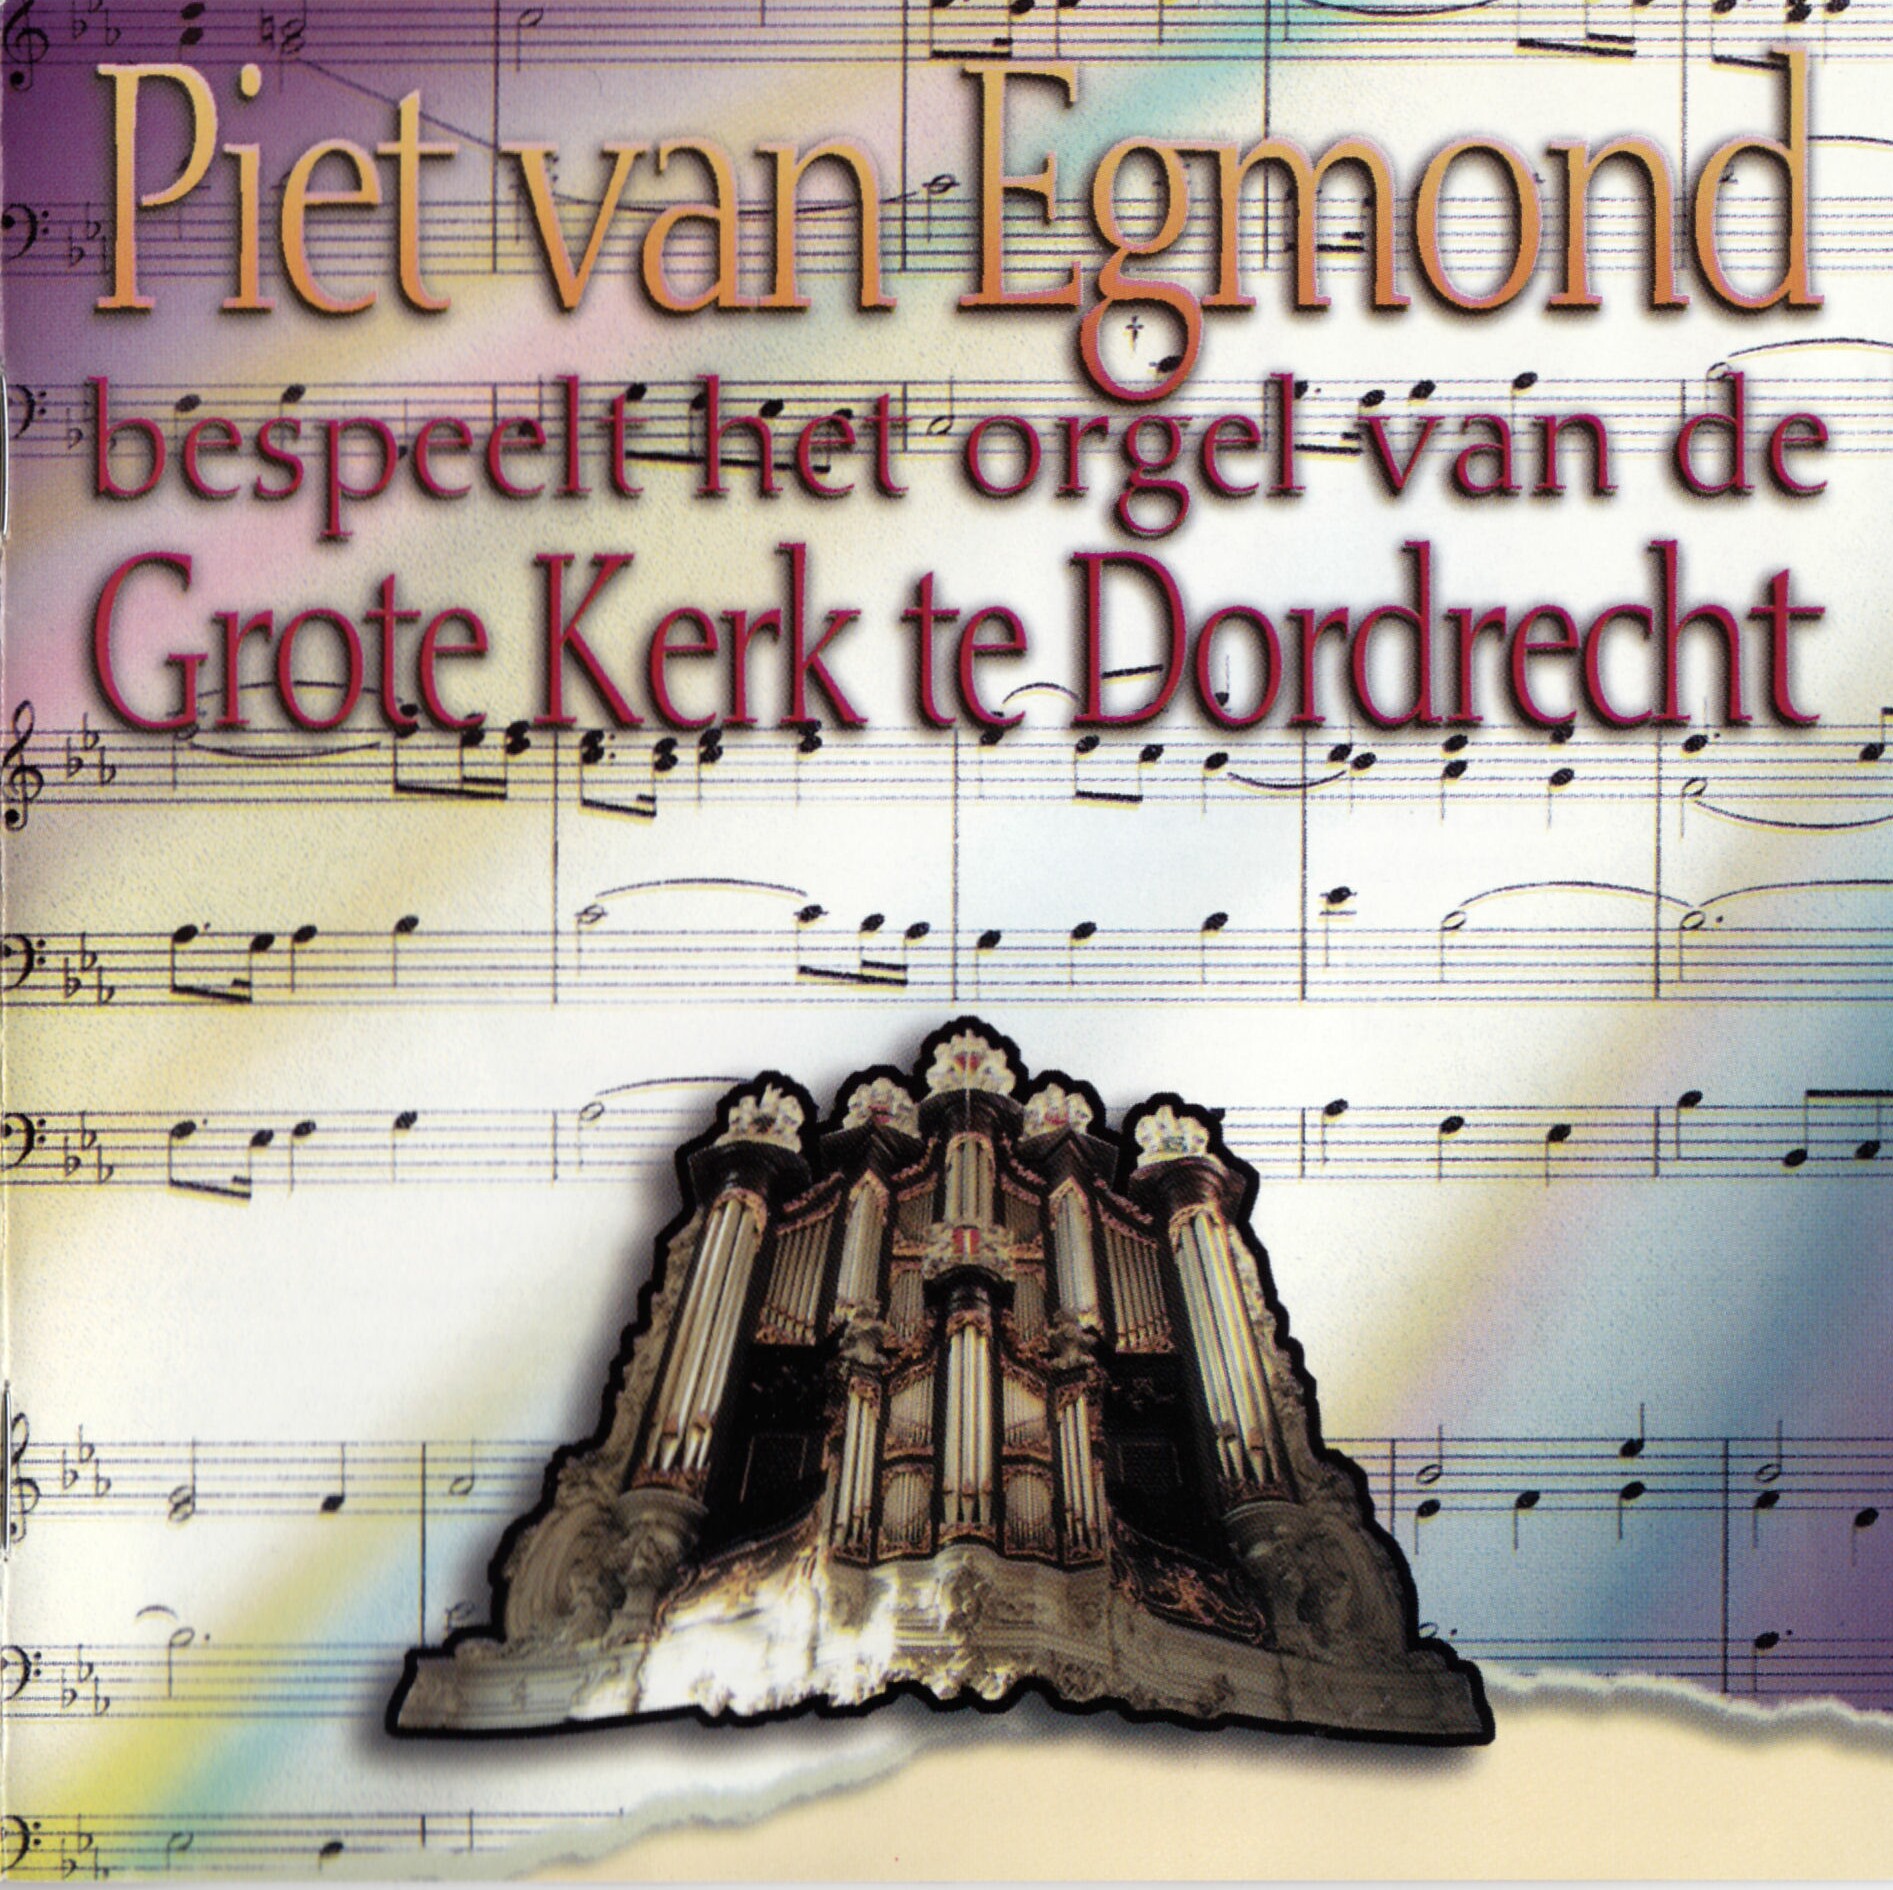 Piet van Egmond bespeelt het orgel van de Grote Kerk te Dordrecht